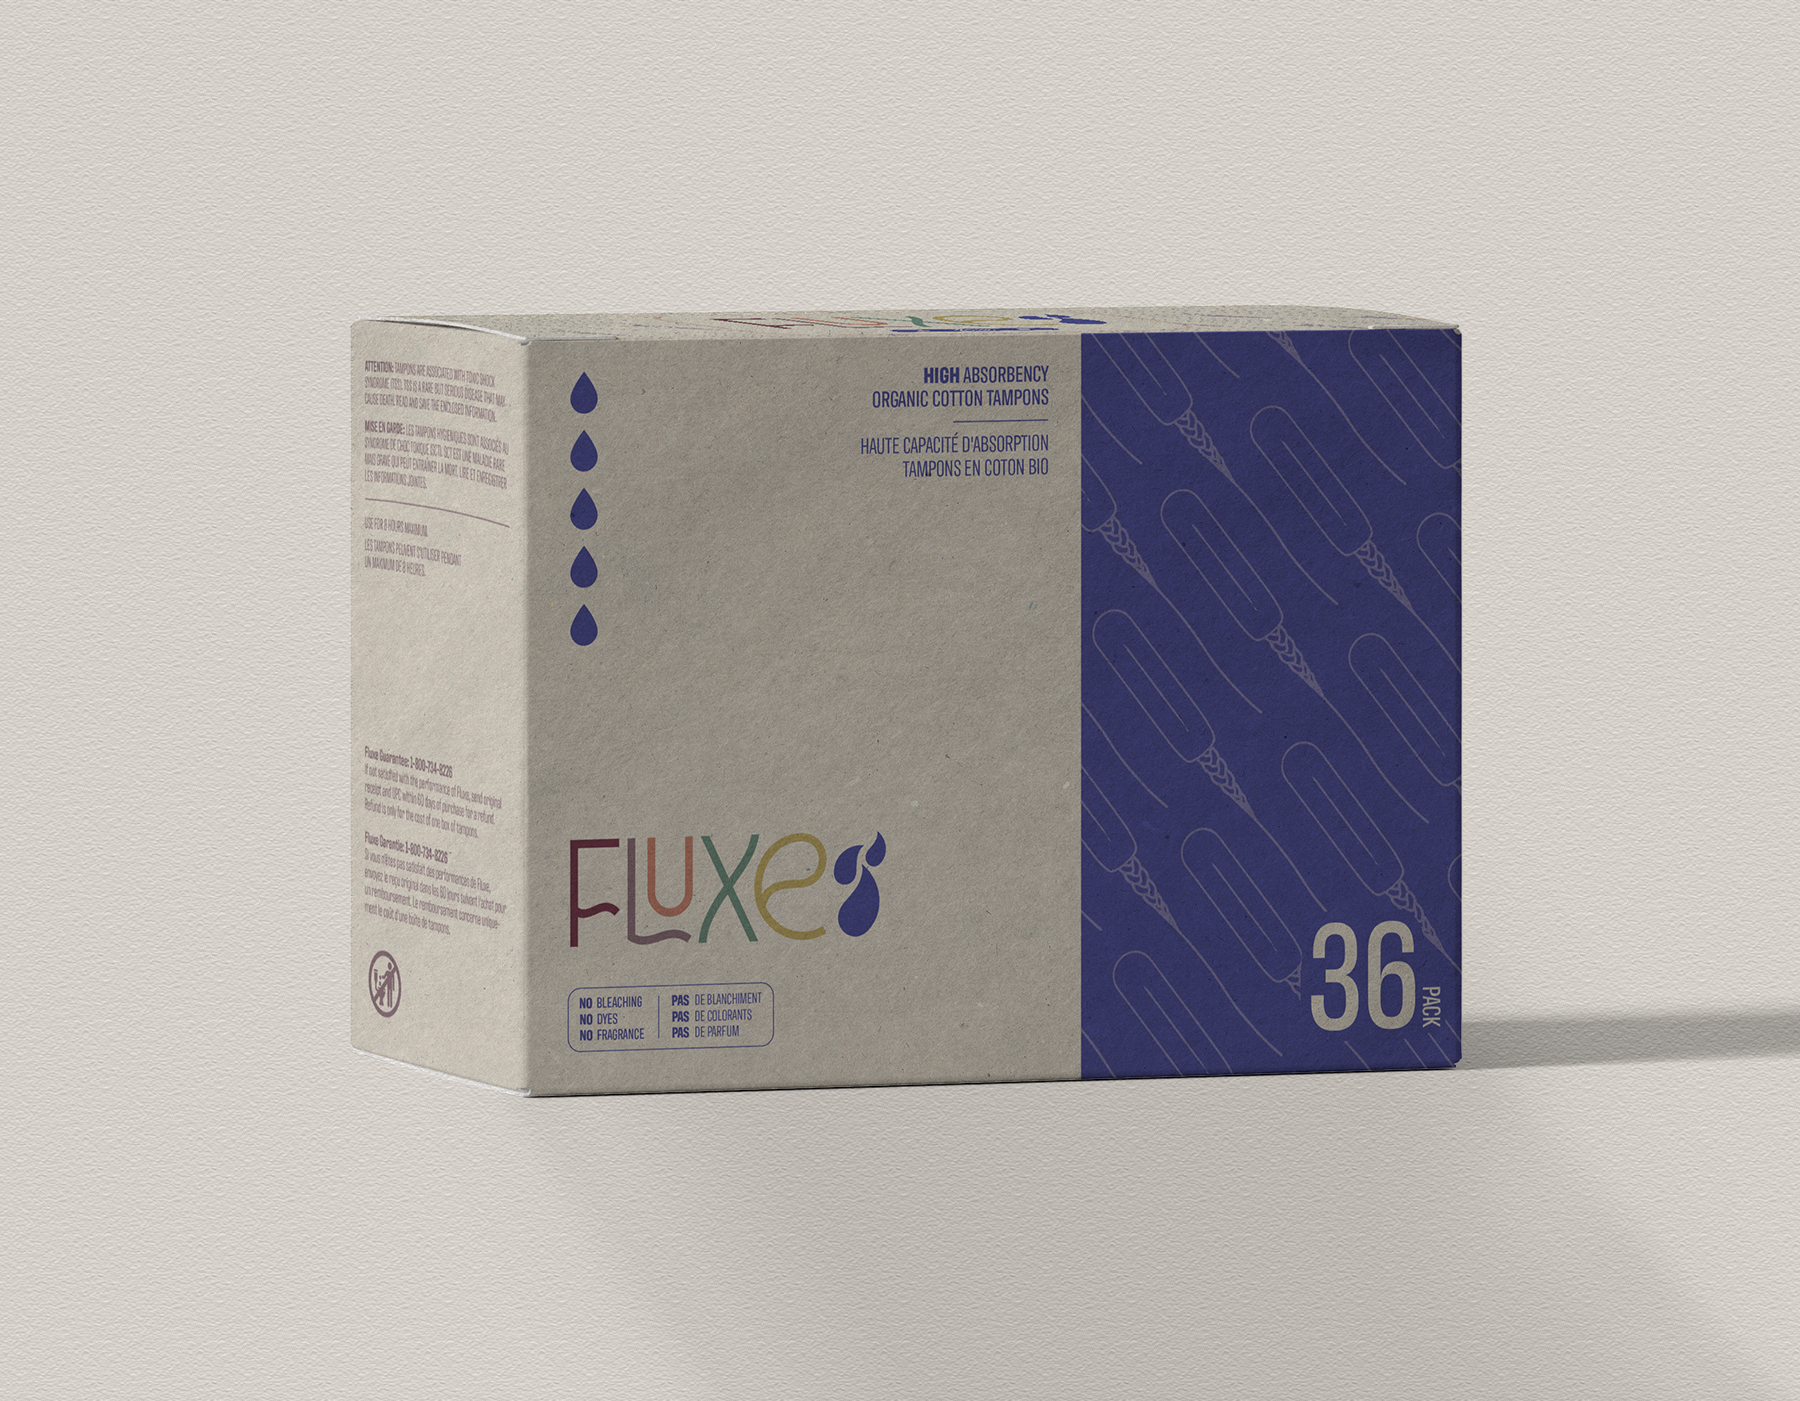 FLUXE: Imagined Hygiene Brand